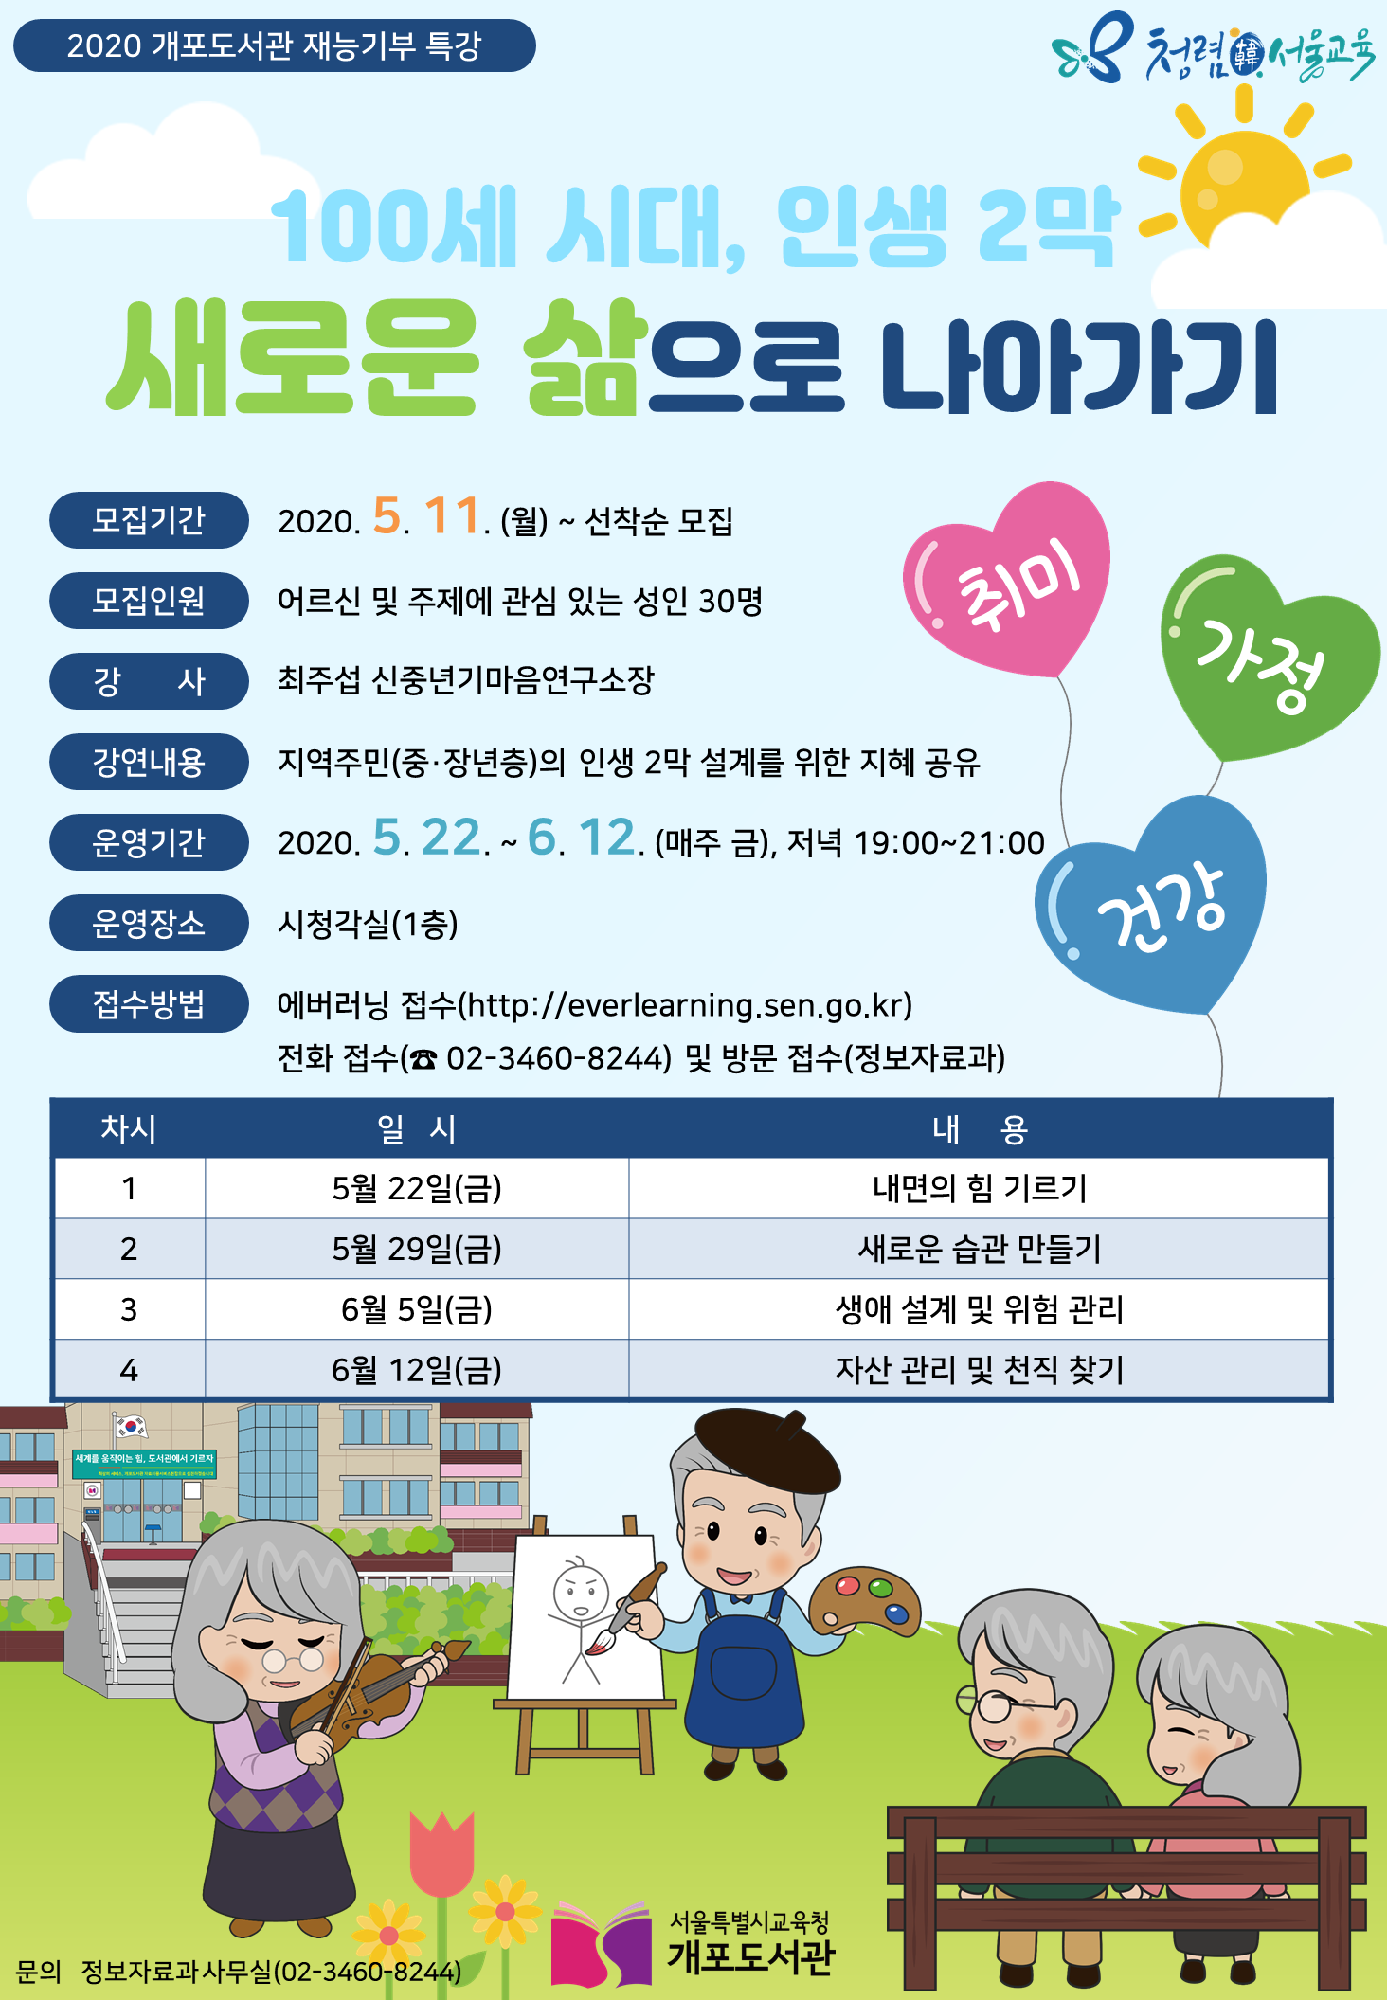 [서울특별시교육청개포도서관]「100세 시대 인생 2막, 새로운 삶으로 나아가기」 강연 안내 포스터